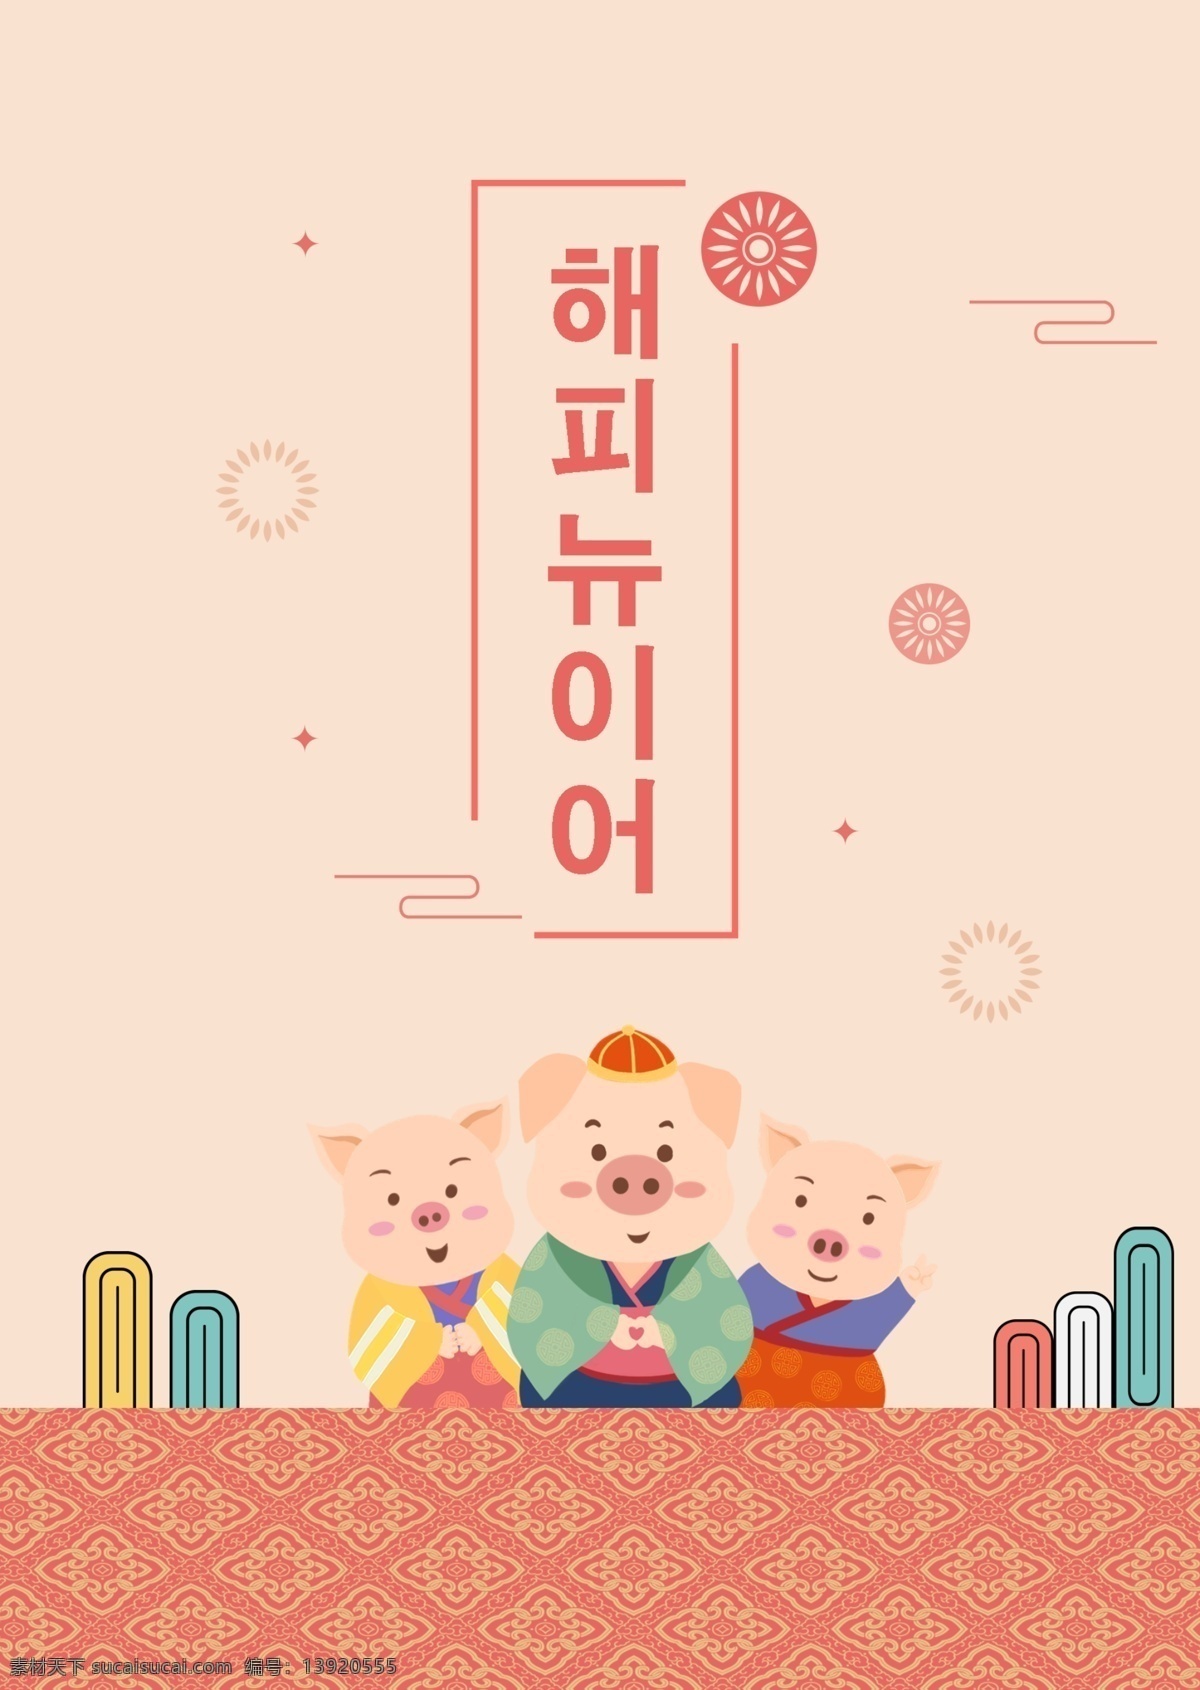 韩国 2019 年猪 猪 新年 春节 中国 狂欢节 海报 床 简单 可爱 节 红色 祝你新年快乐 新的一年 烟花 韩国风格 韩国传统模式 传统 风格 韩国人韩 云 模式